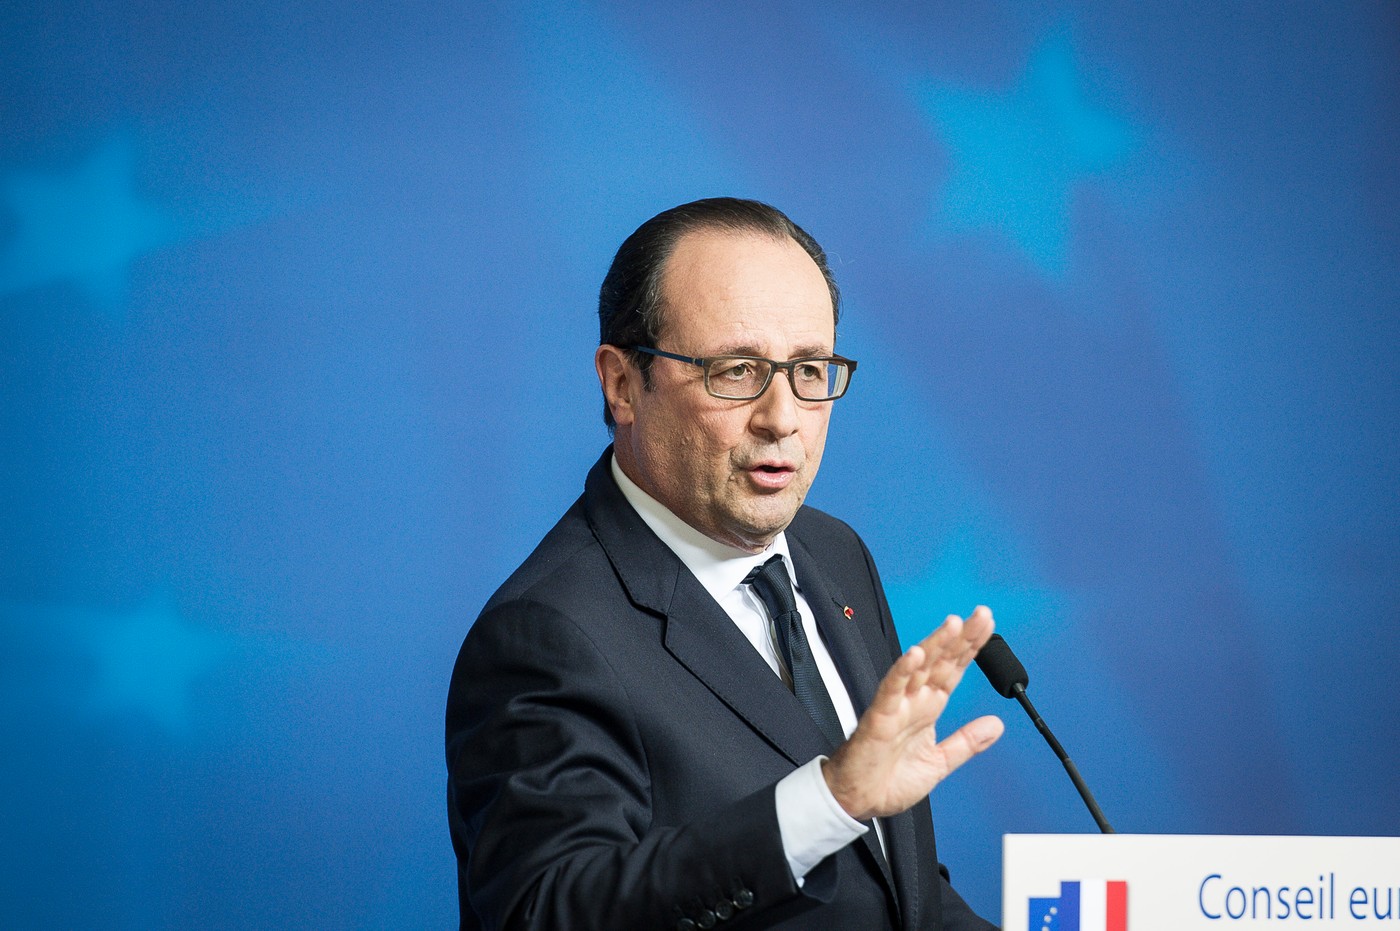 Hollande navrhuje zrušení protiruských sankcí. Ale jen za určitých podmínek